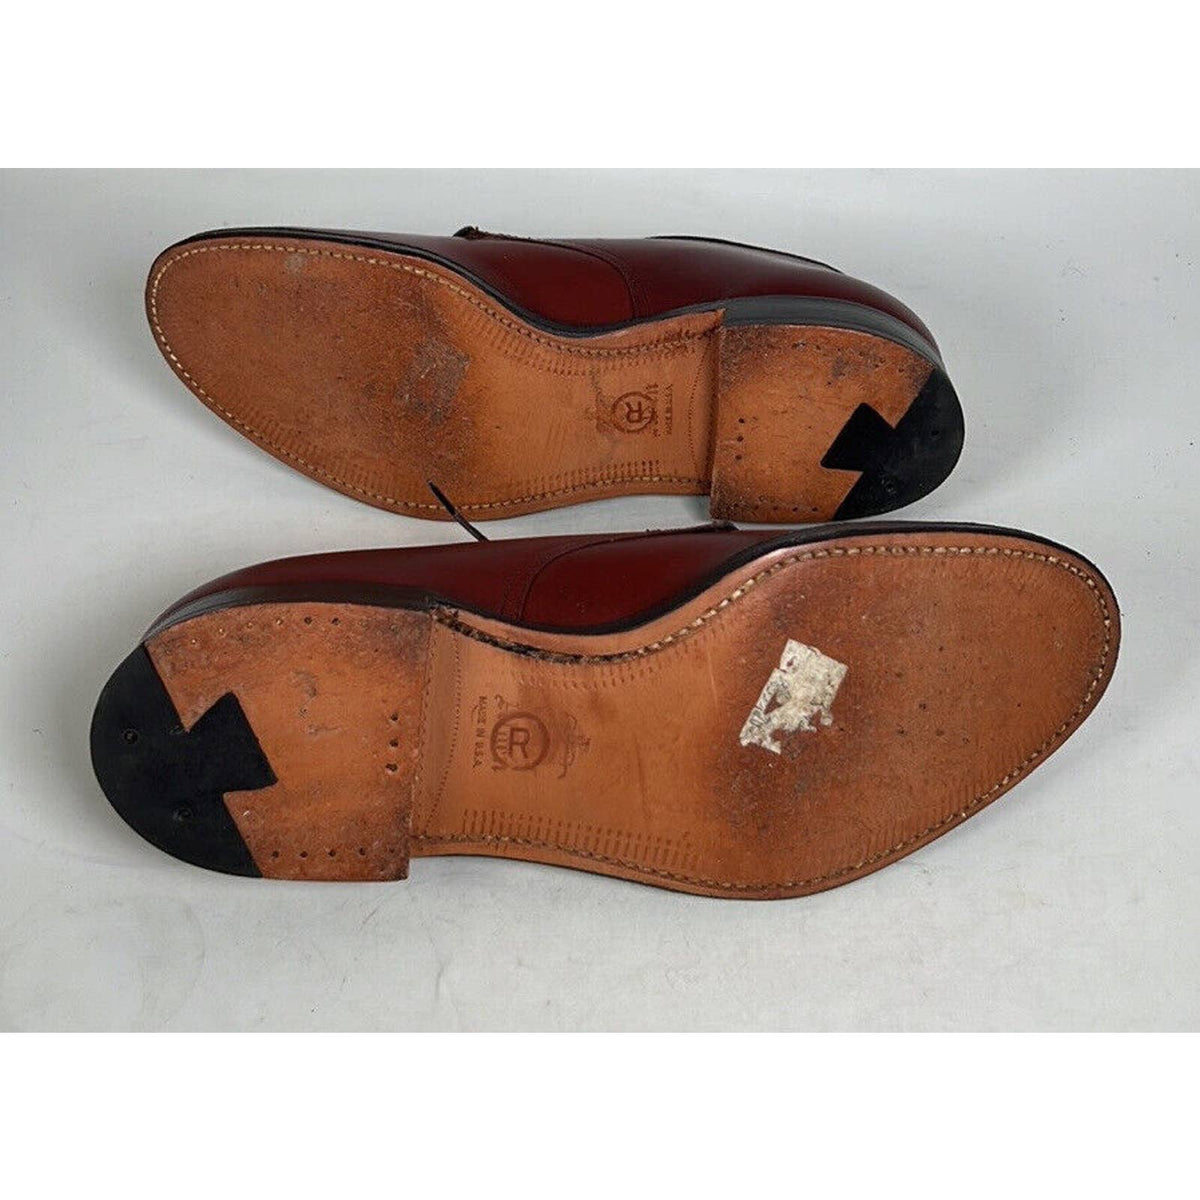 Alden Brown Leather Lace-Up Mens Shoes Sz.7.5 A